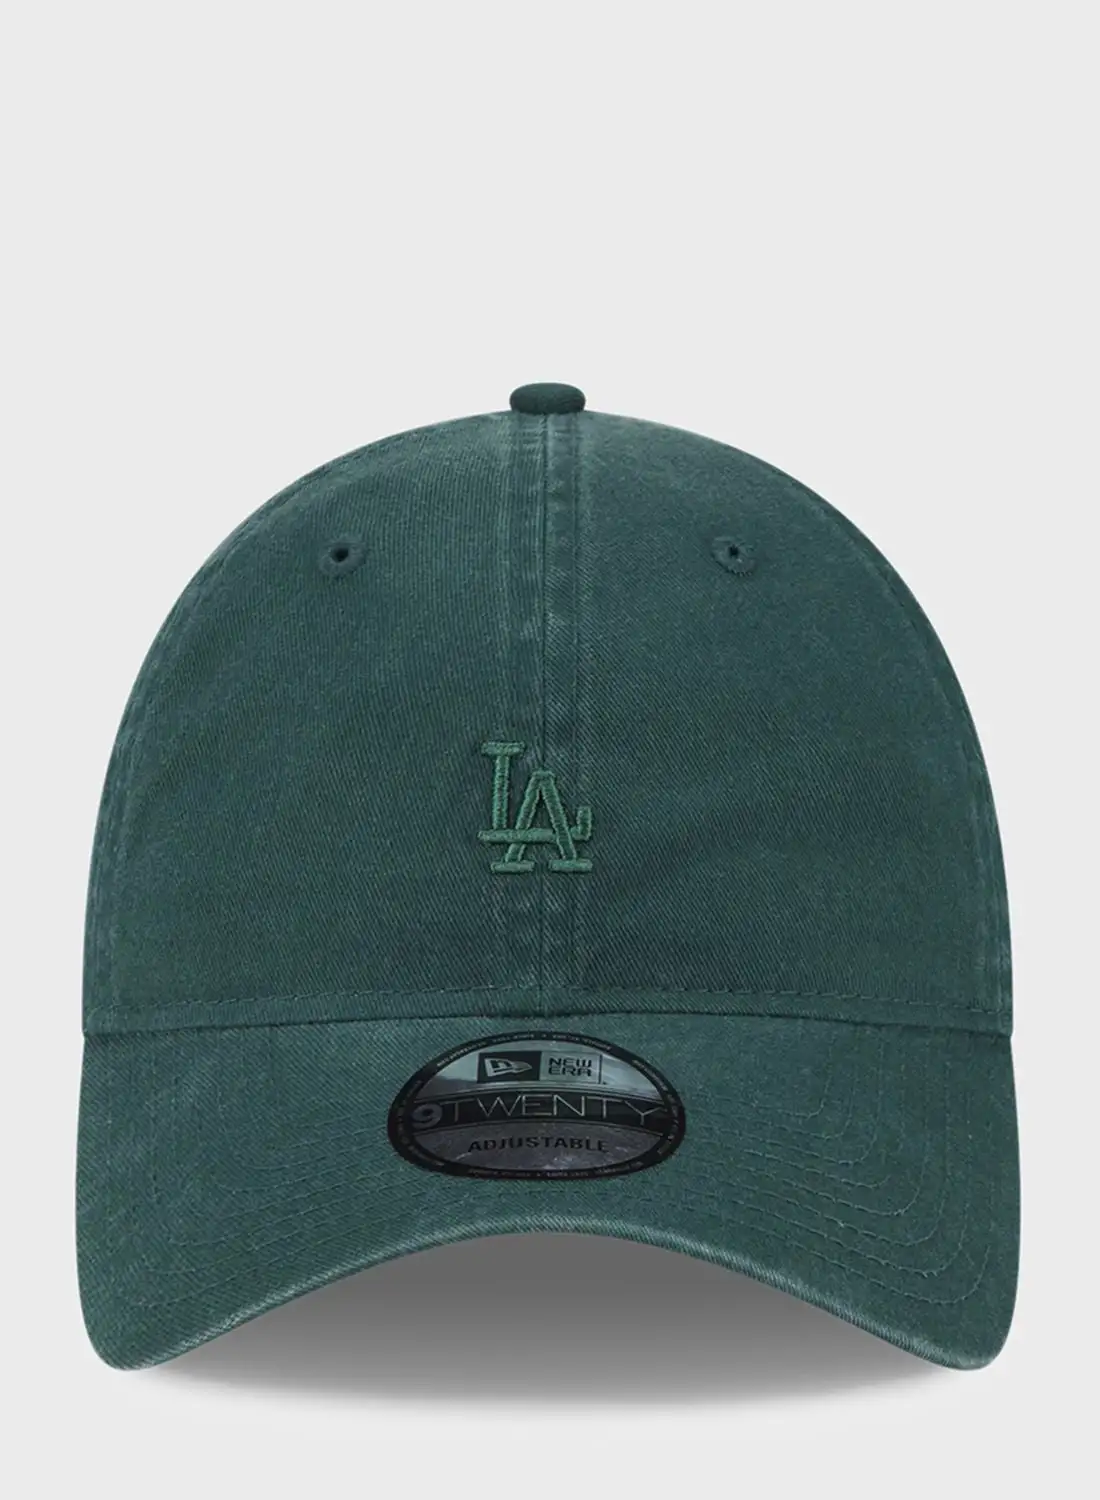 قبعة نيو إيرا 9 توينتي لوس أنجلوس دودجرز